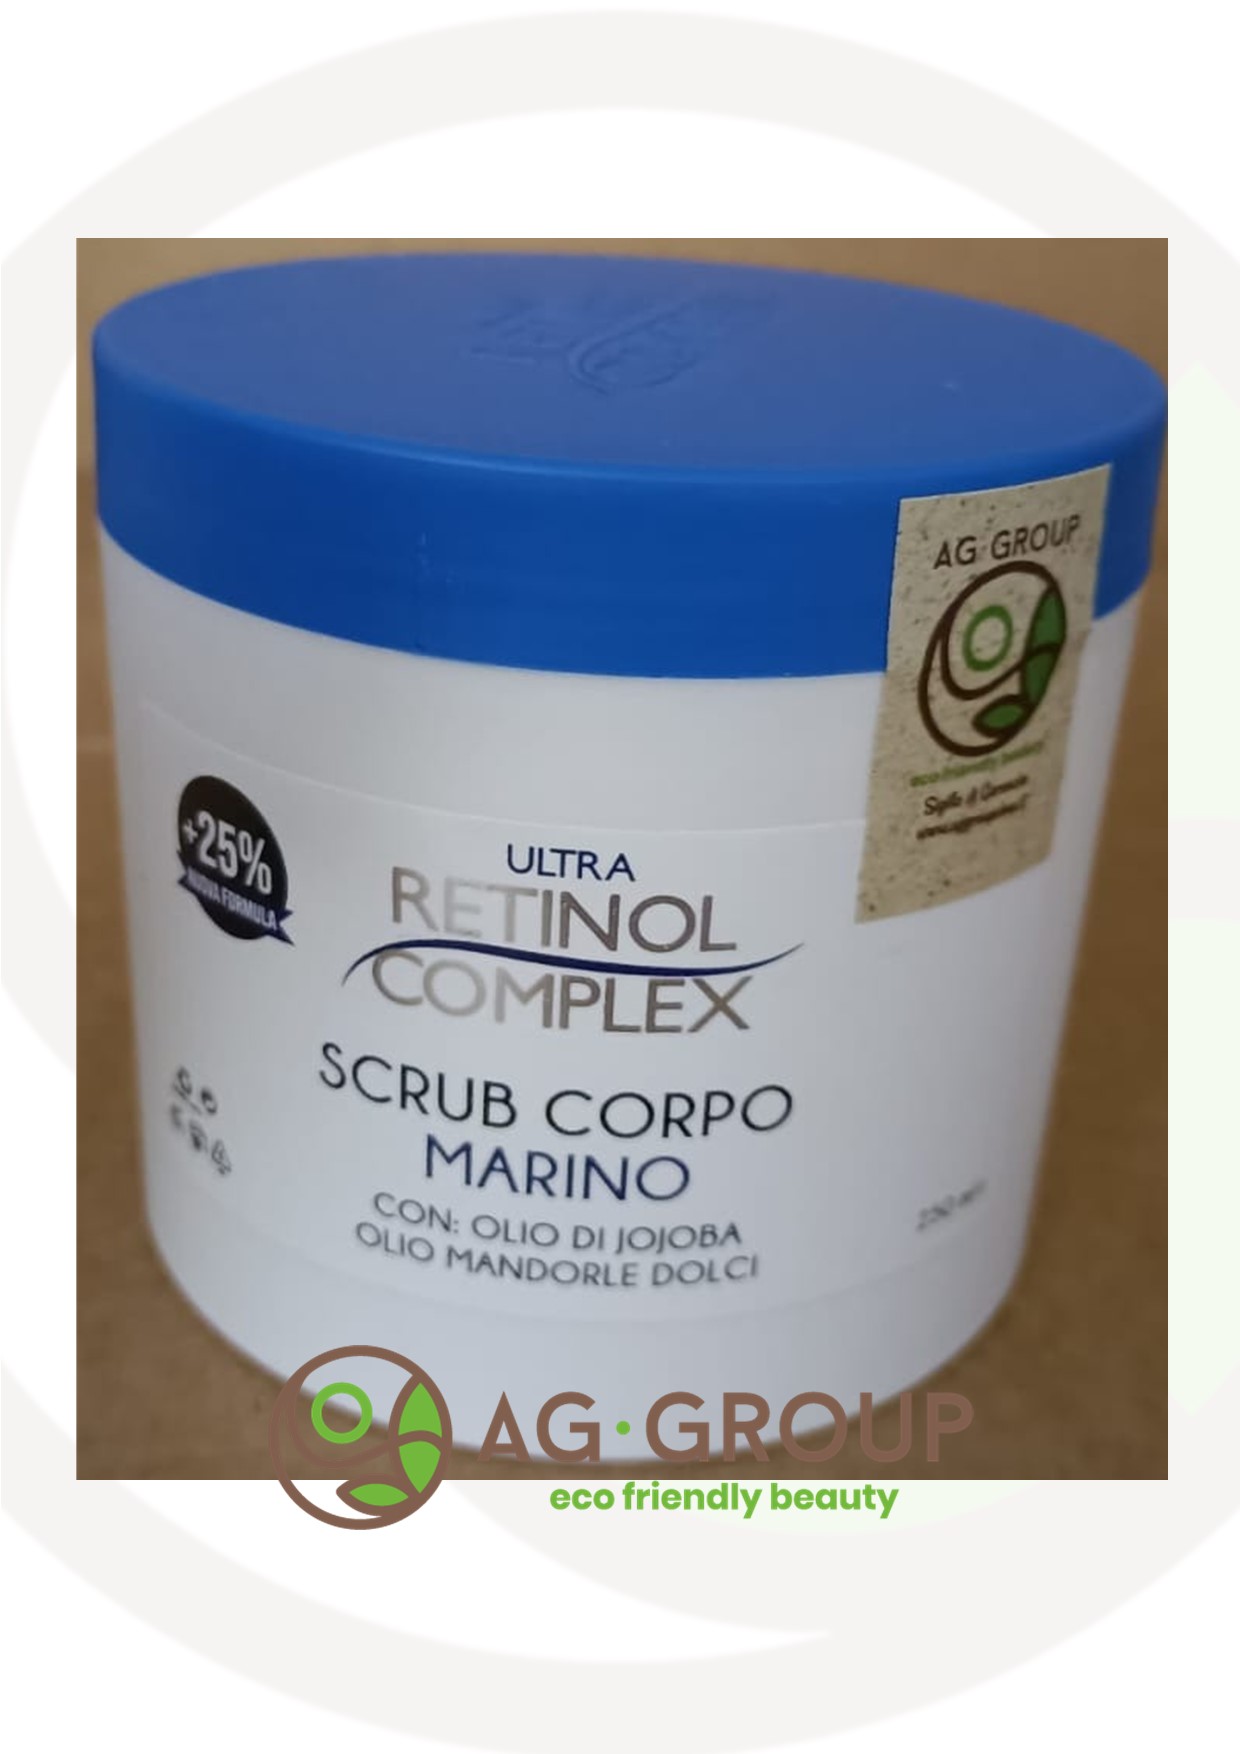 Featured image for “Scrub corpo marino con oli preziosi 250ml”